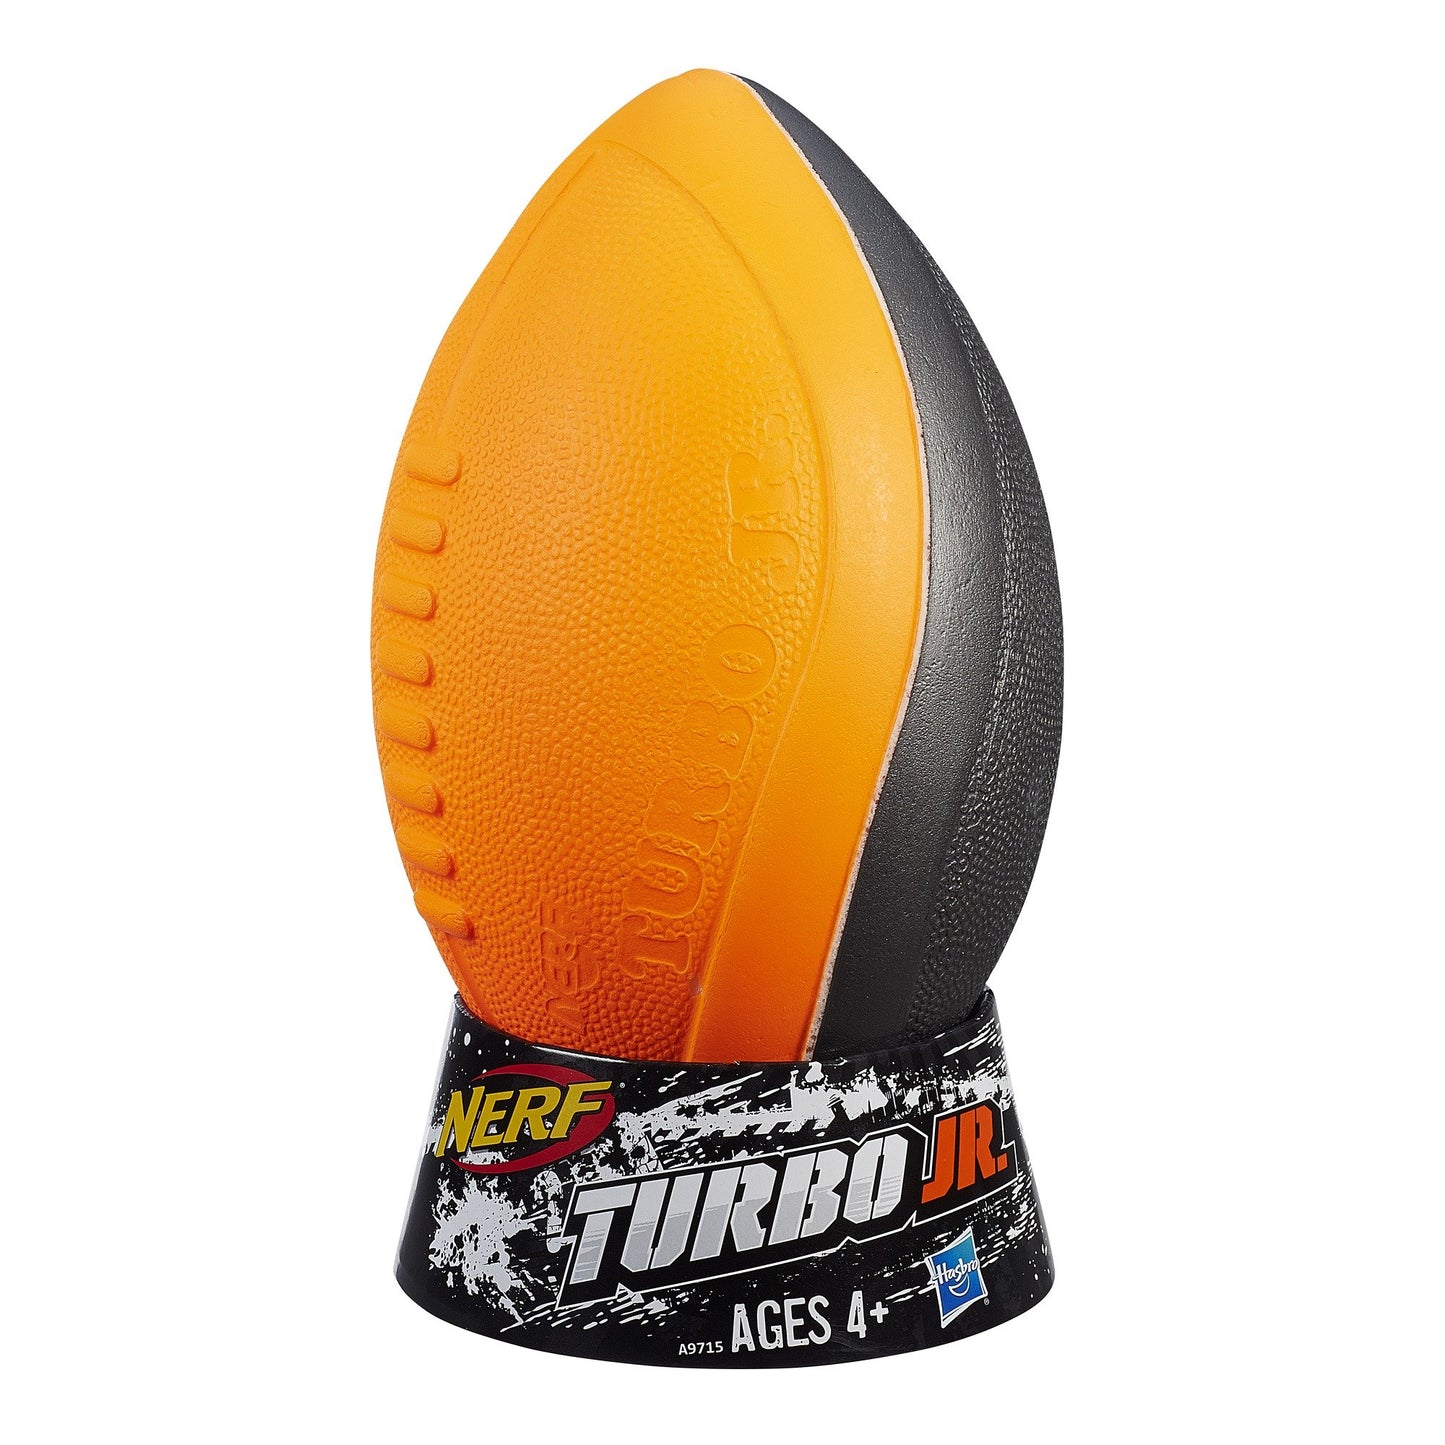 Nerf N-Sports Turbo Jr. Football